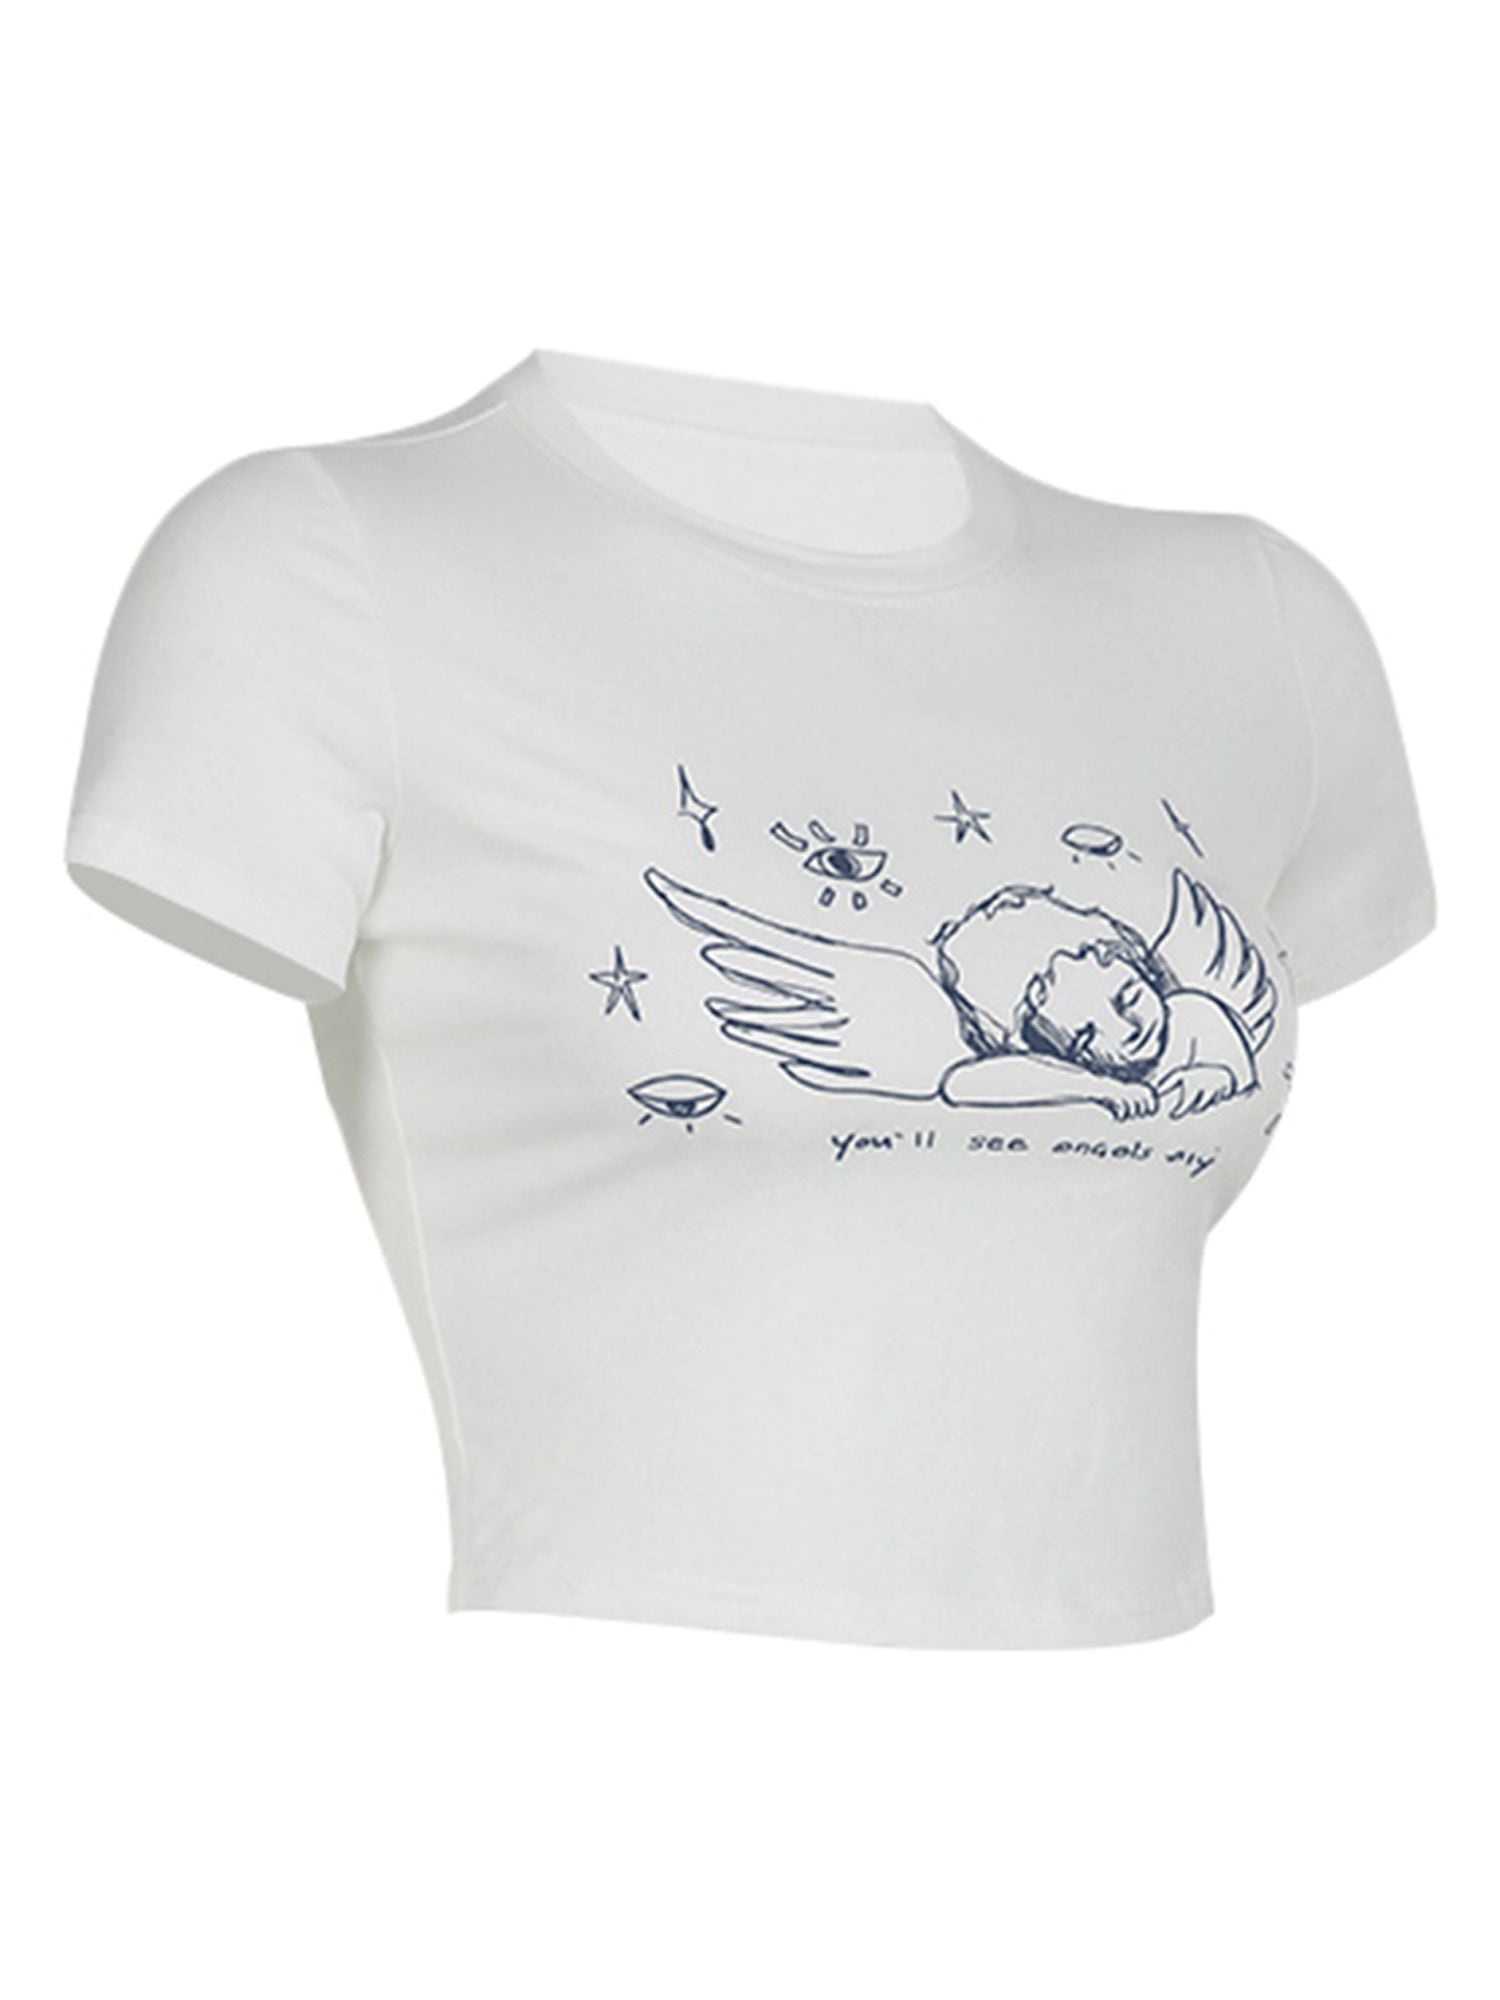 Historisch günstigster Preis Carolilly Women Grunge Baby Angel Tees Fairycore Fashion Clothes Cute Sleeve Short Street 90s Tops Vintage Print T-shirt Crop Retro